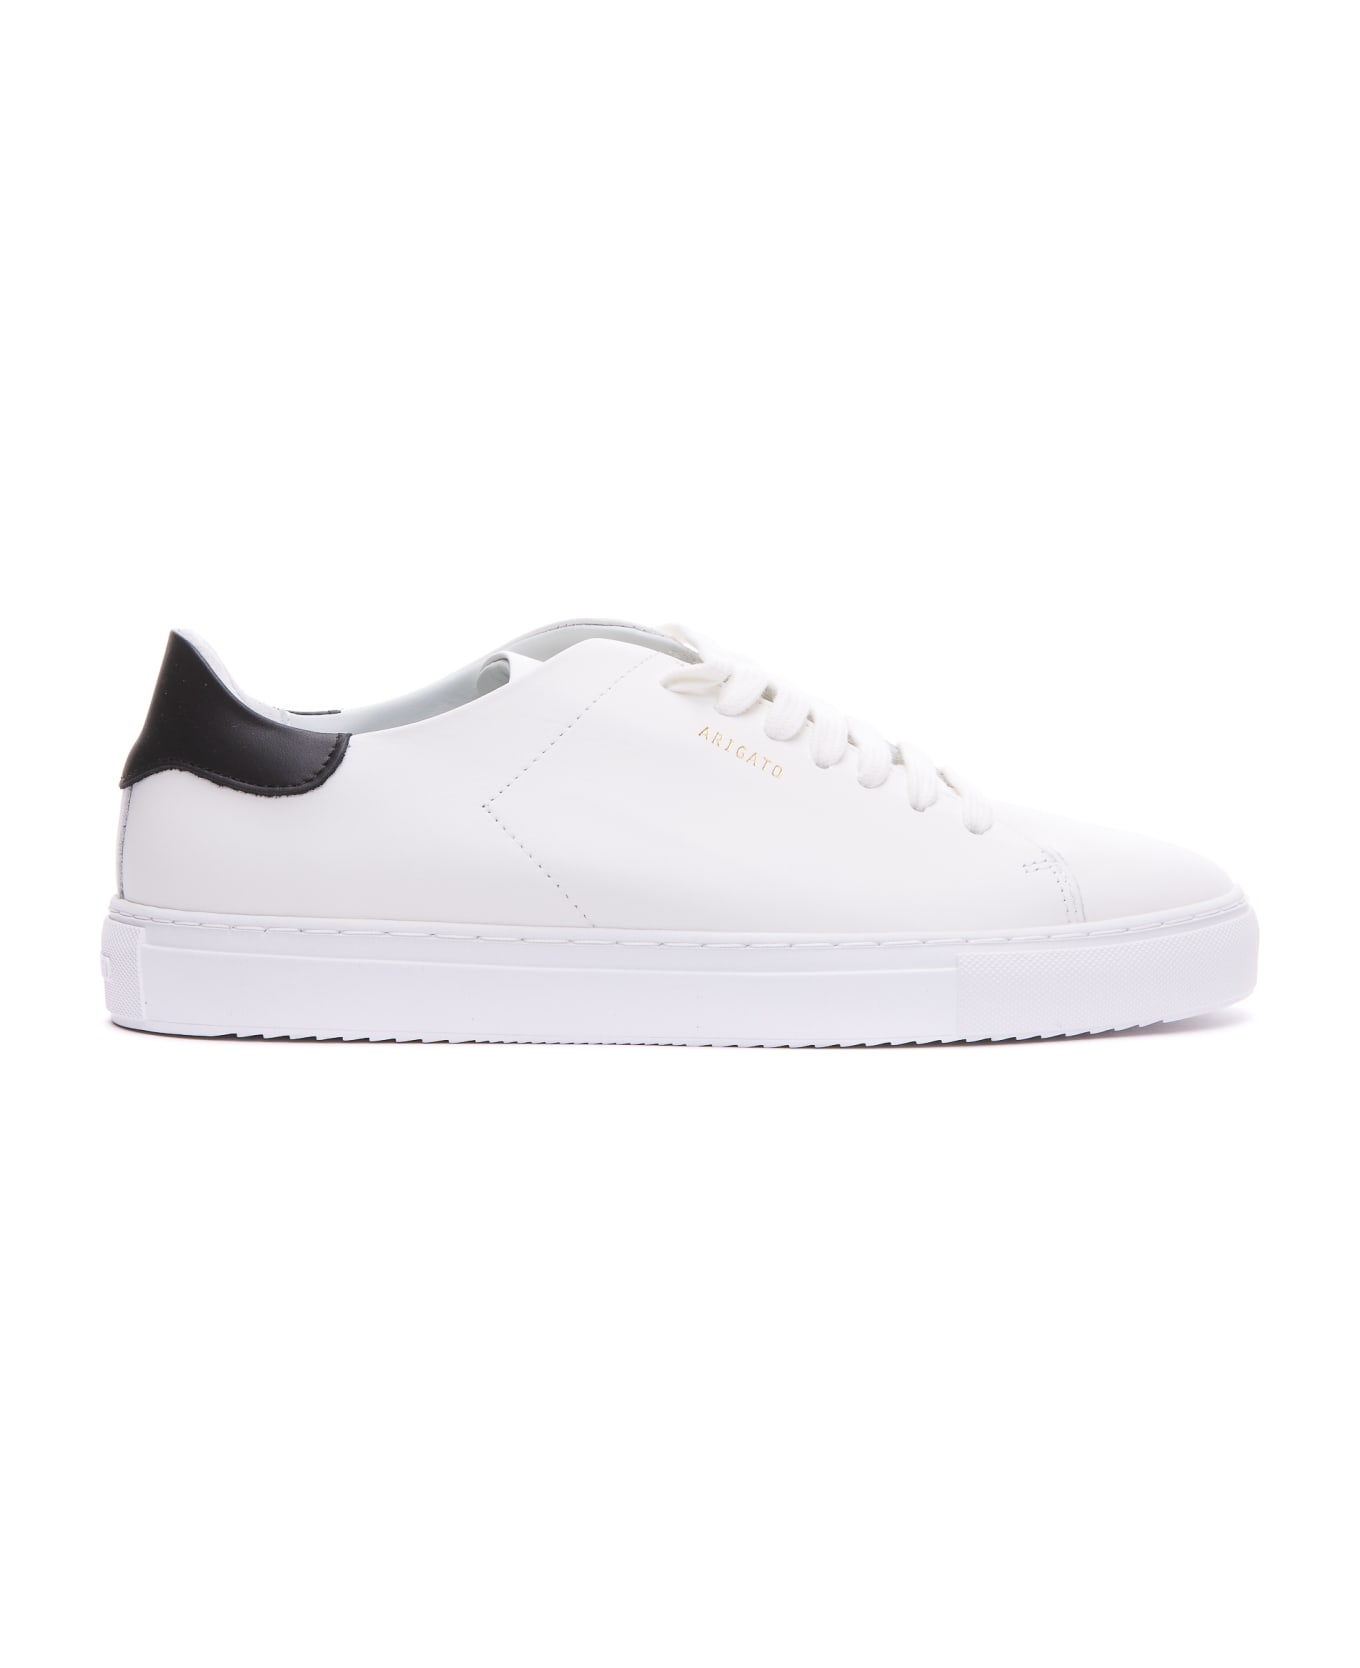 Axel Arigato Clean 90 Sneakers - White/black